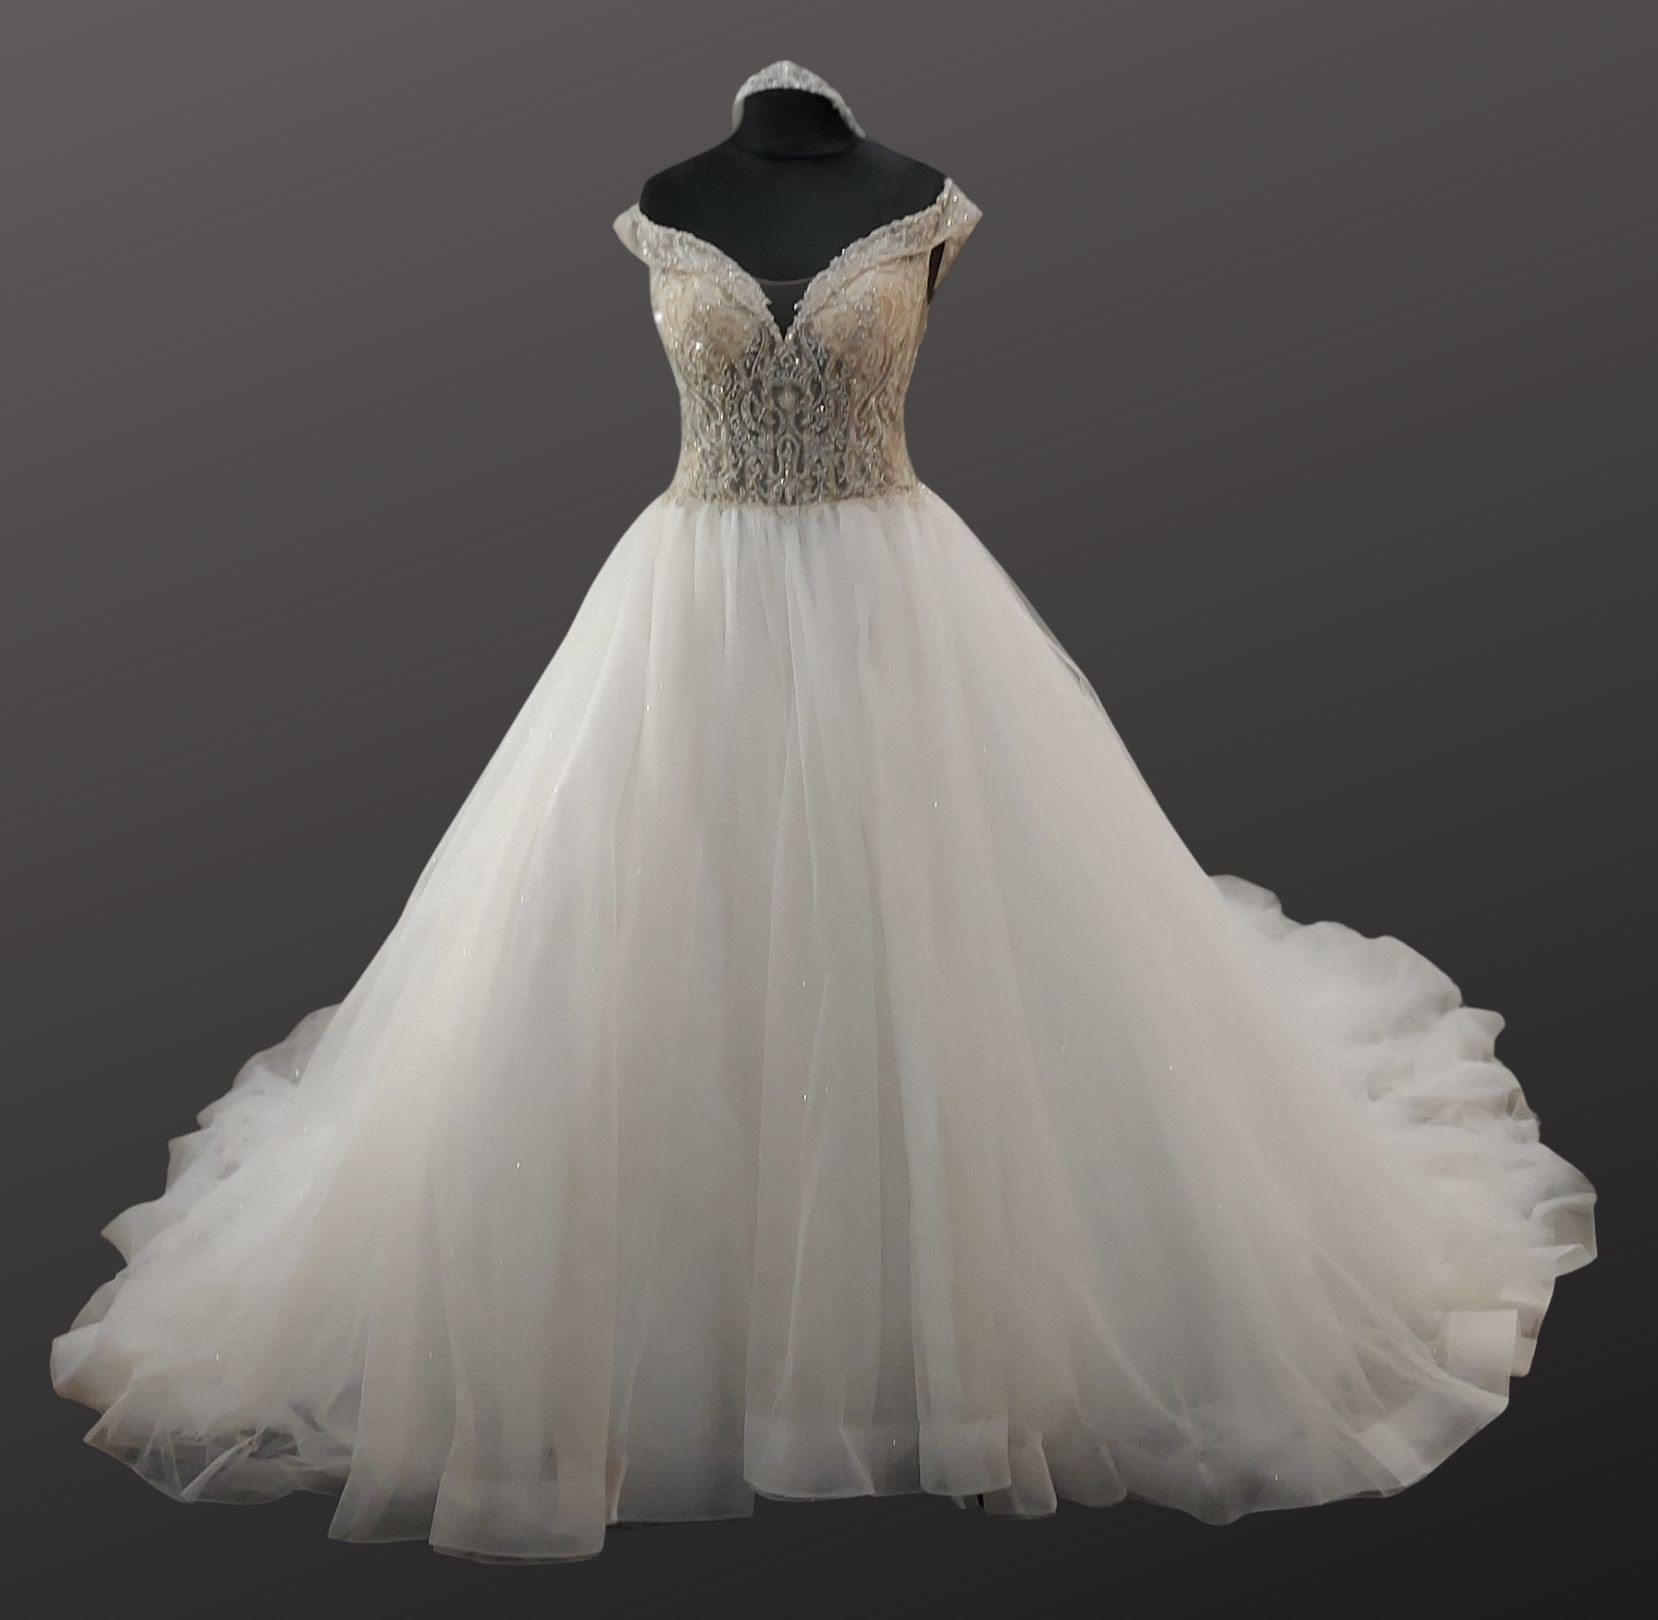 Precious Wedding Dress | Dresses 2 Impress U